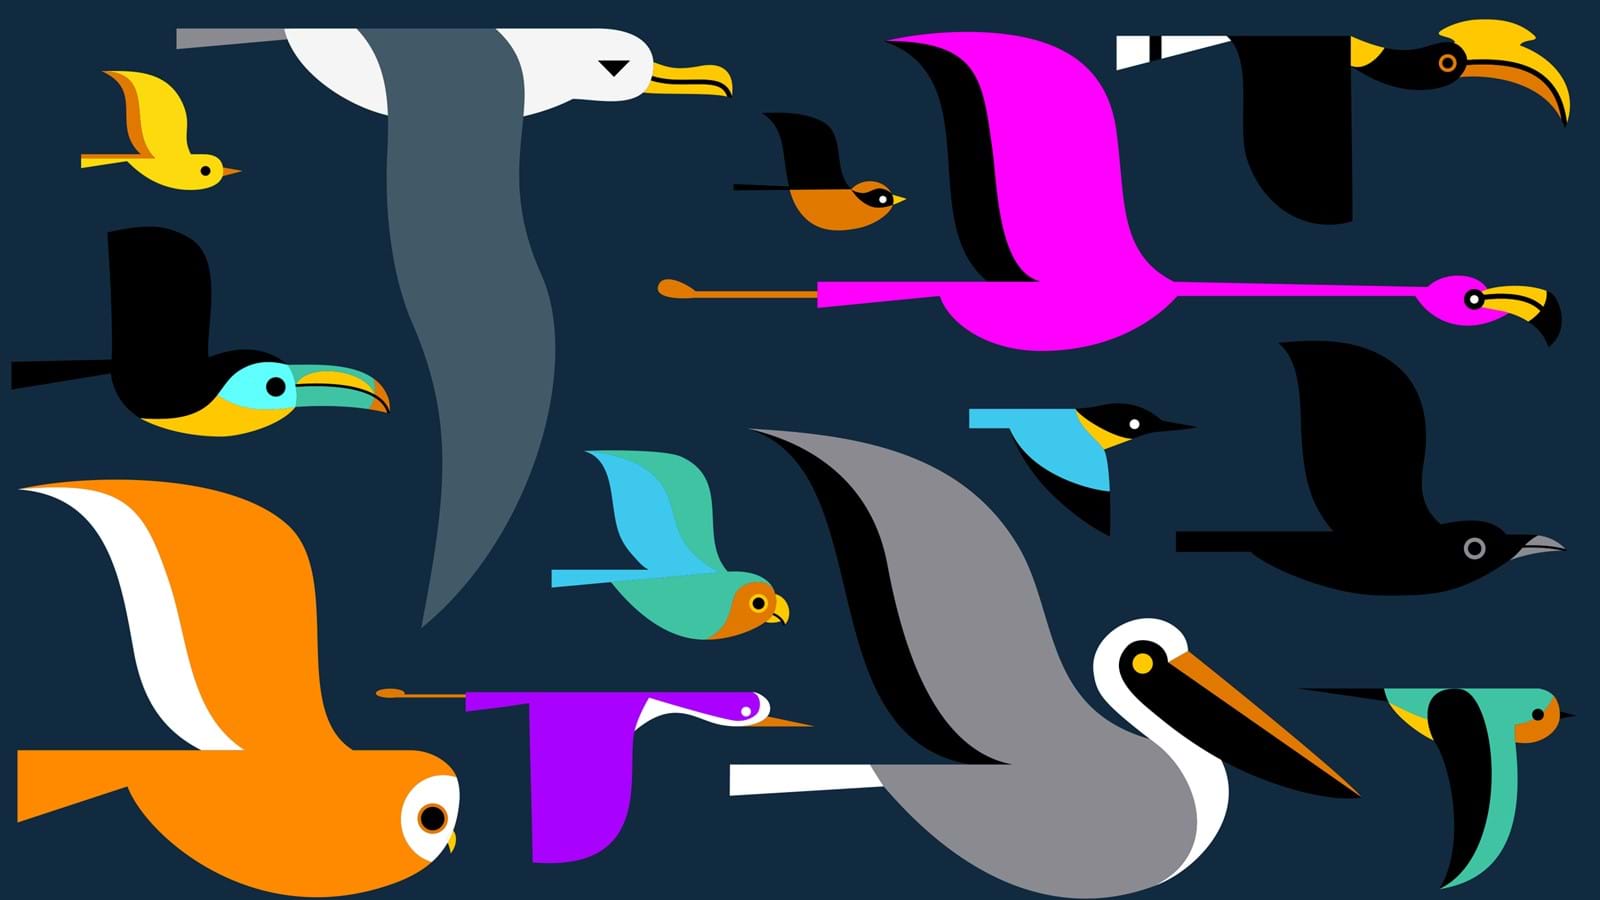 Flock of birds migrating